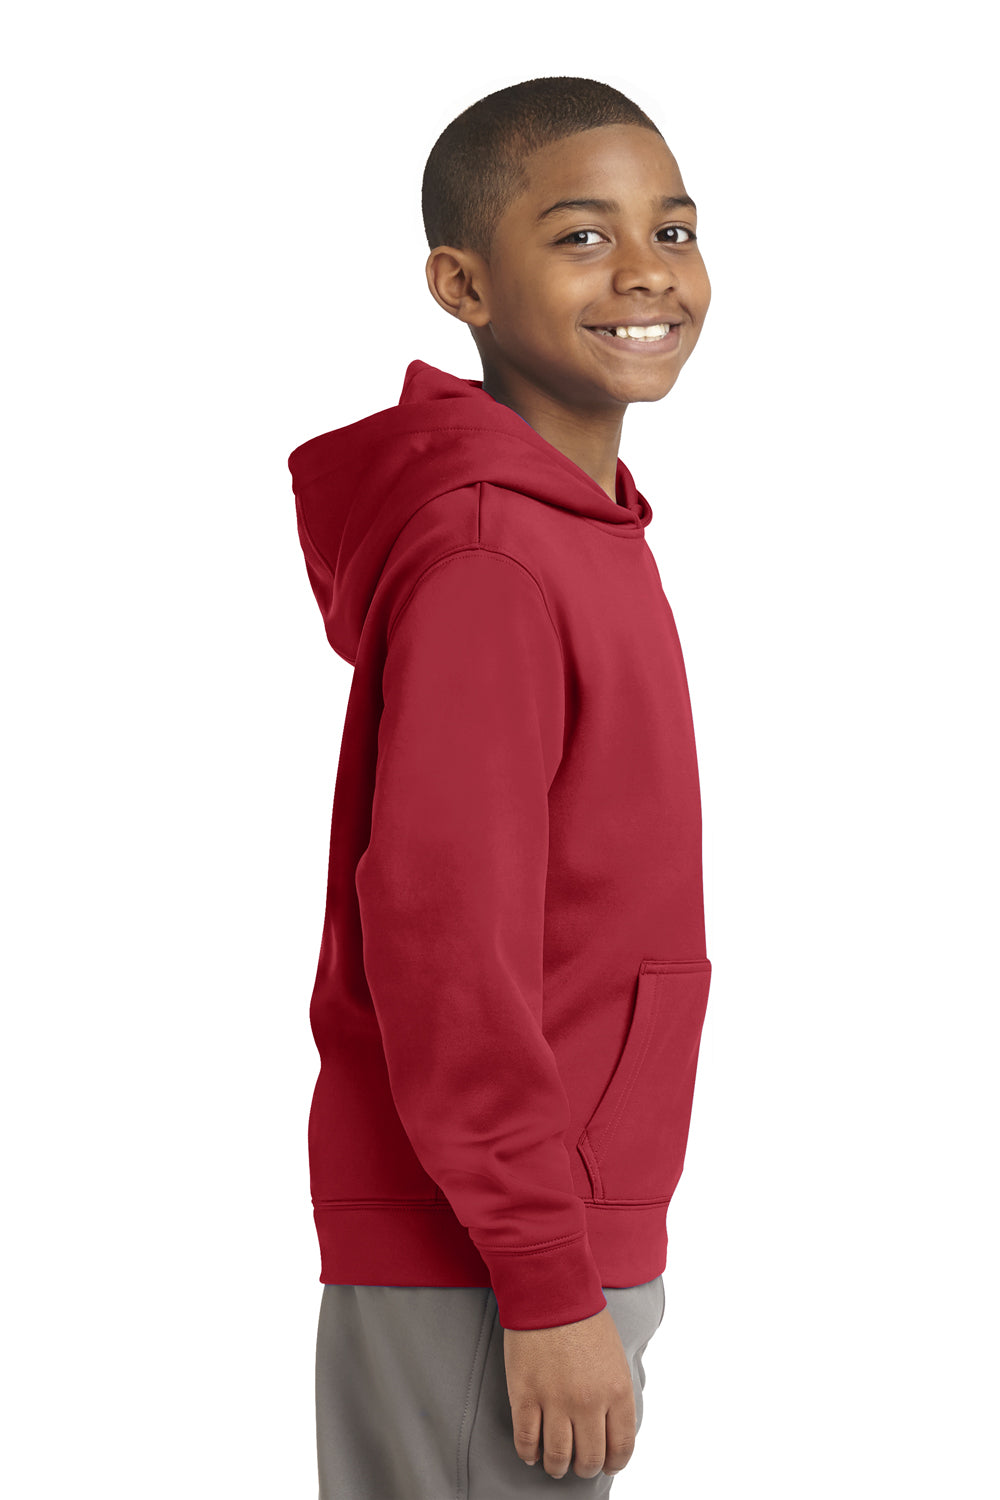 Sport-Tek YST244 Youth Sport-Wick Moisture Wicking Fleece Hooded Sweatshirt Hoodie Red Side